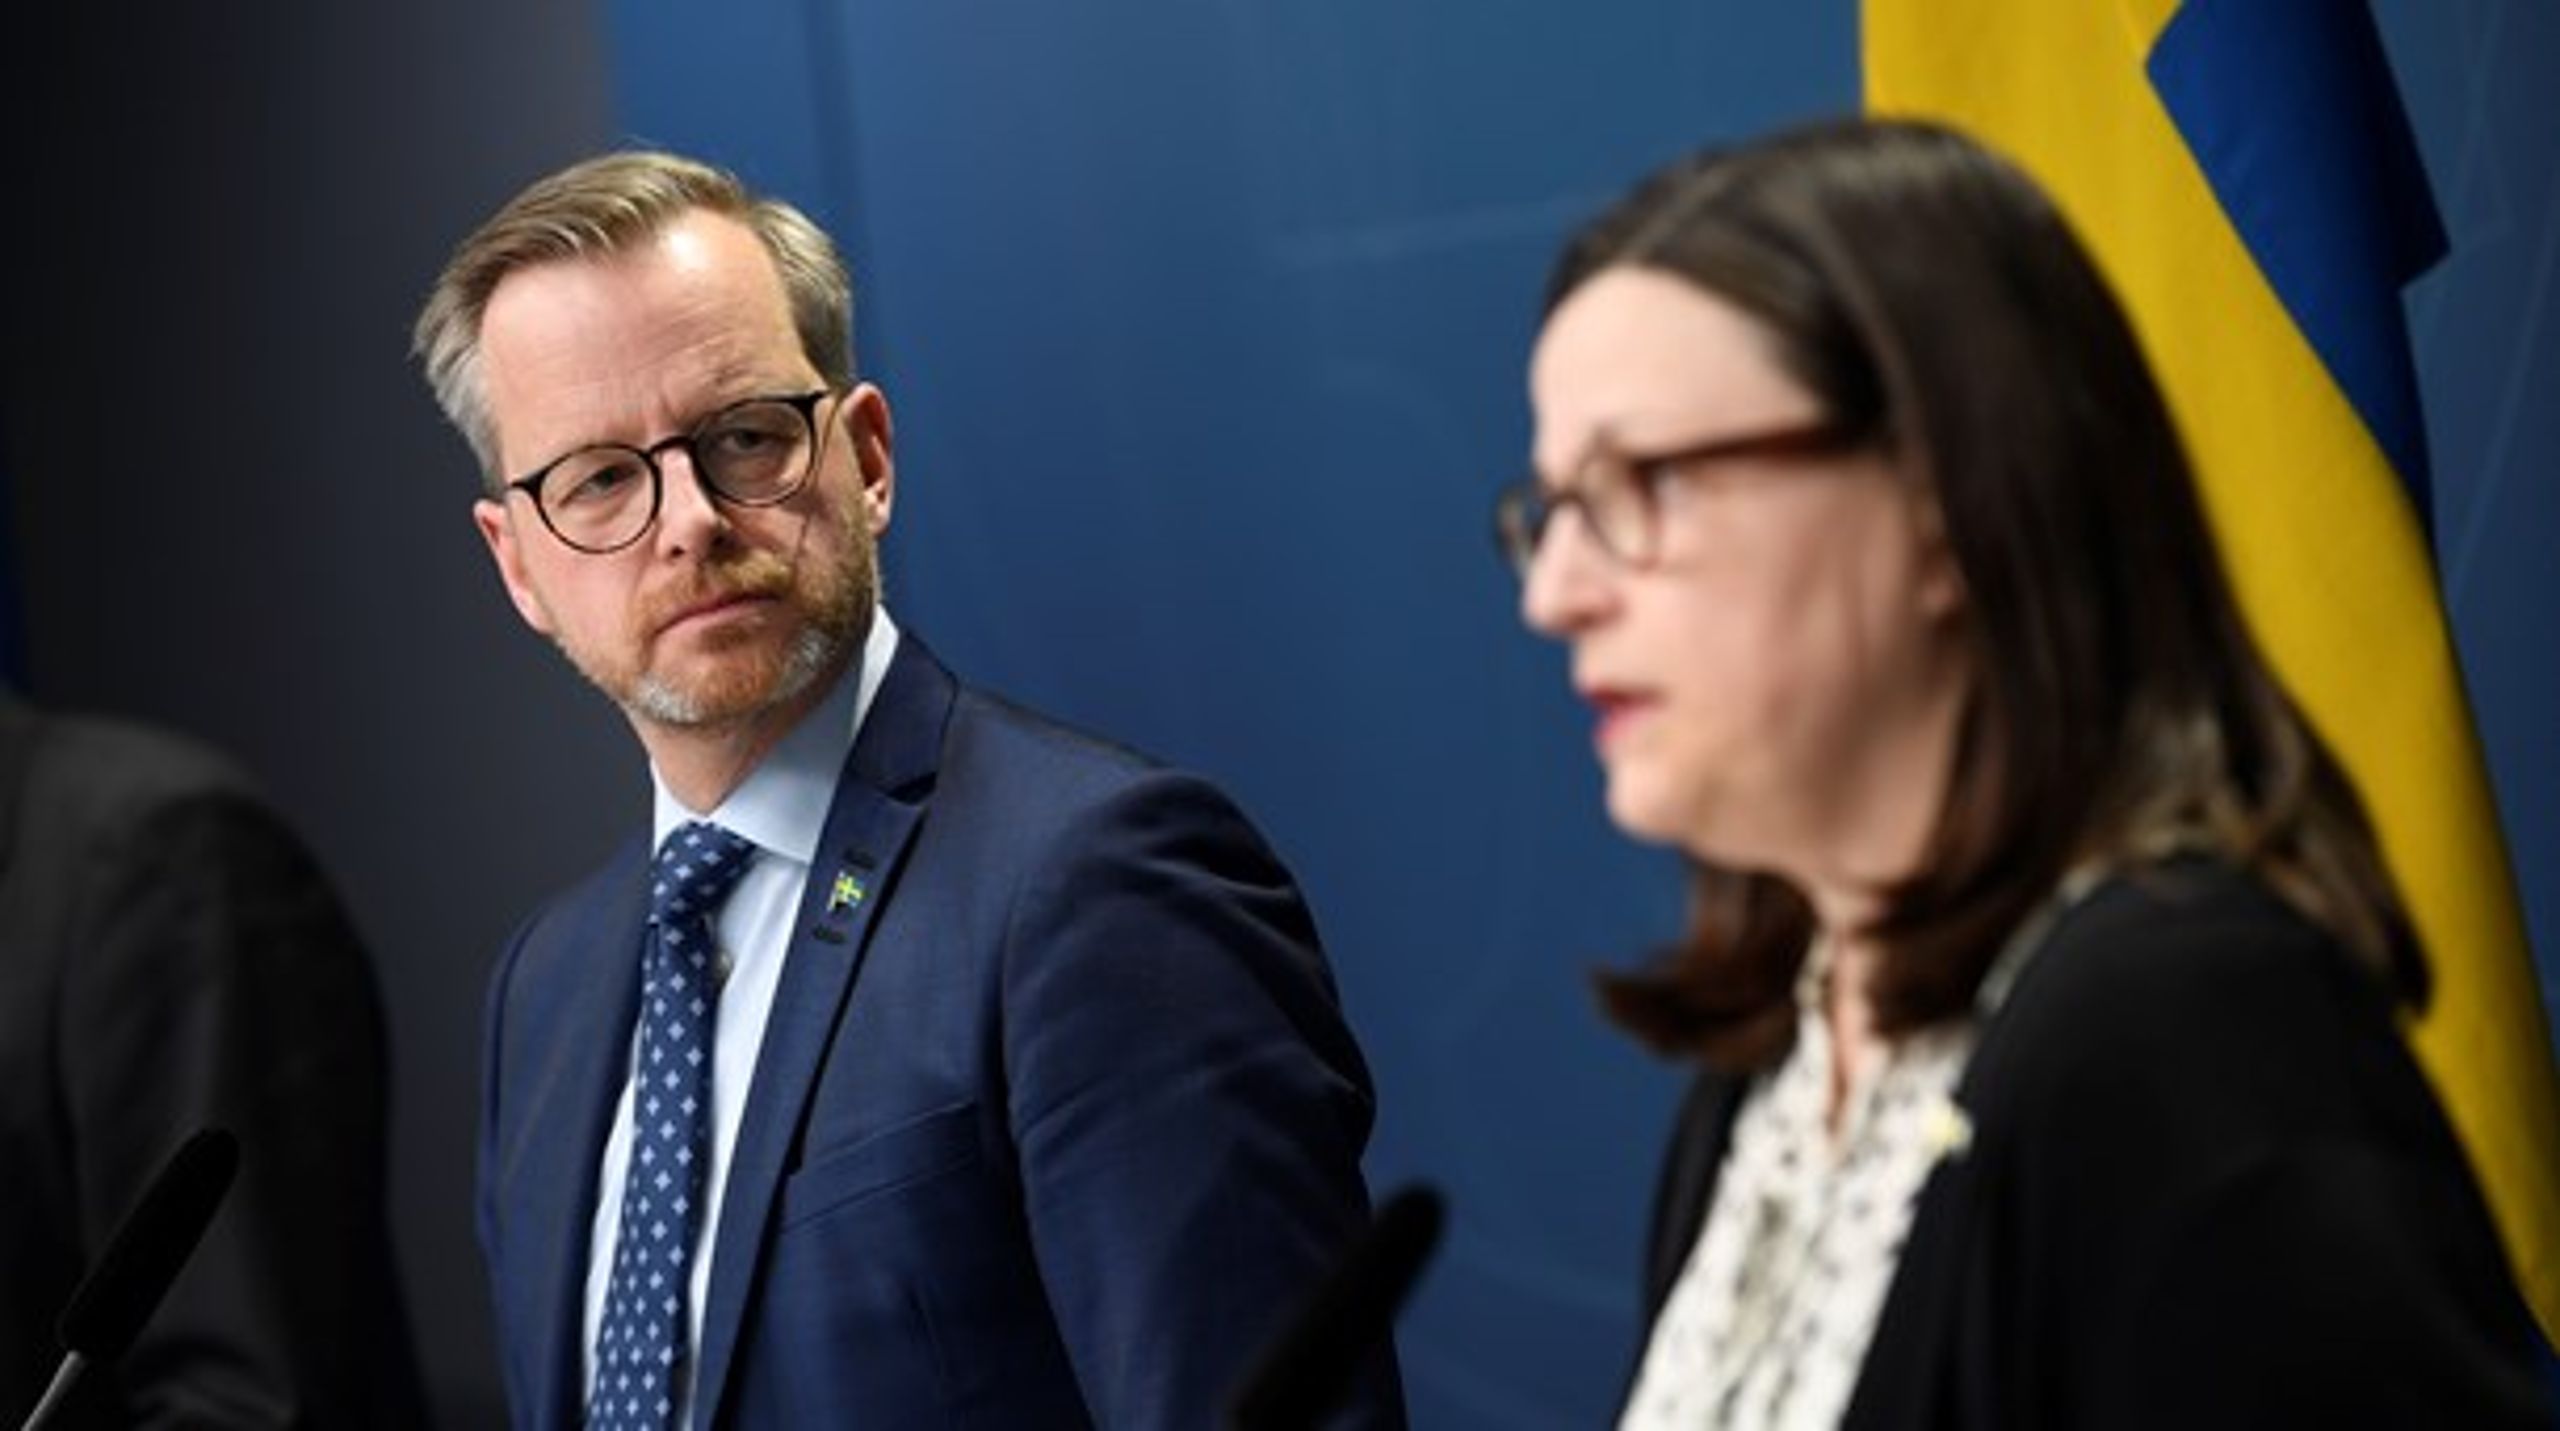 Inrikesminister Mikael Damberg (S) och utbildningsminister Anna Ekström (S) vid pressträffen på fredag kväll.